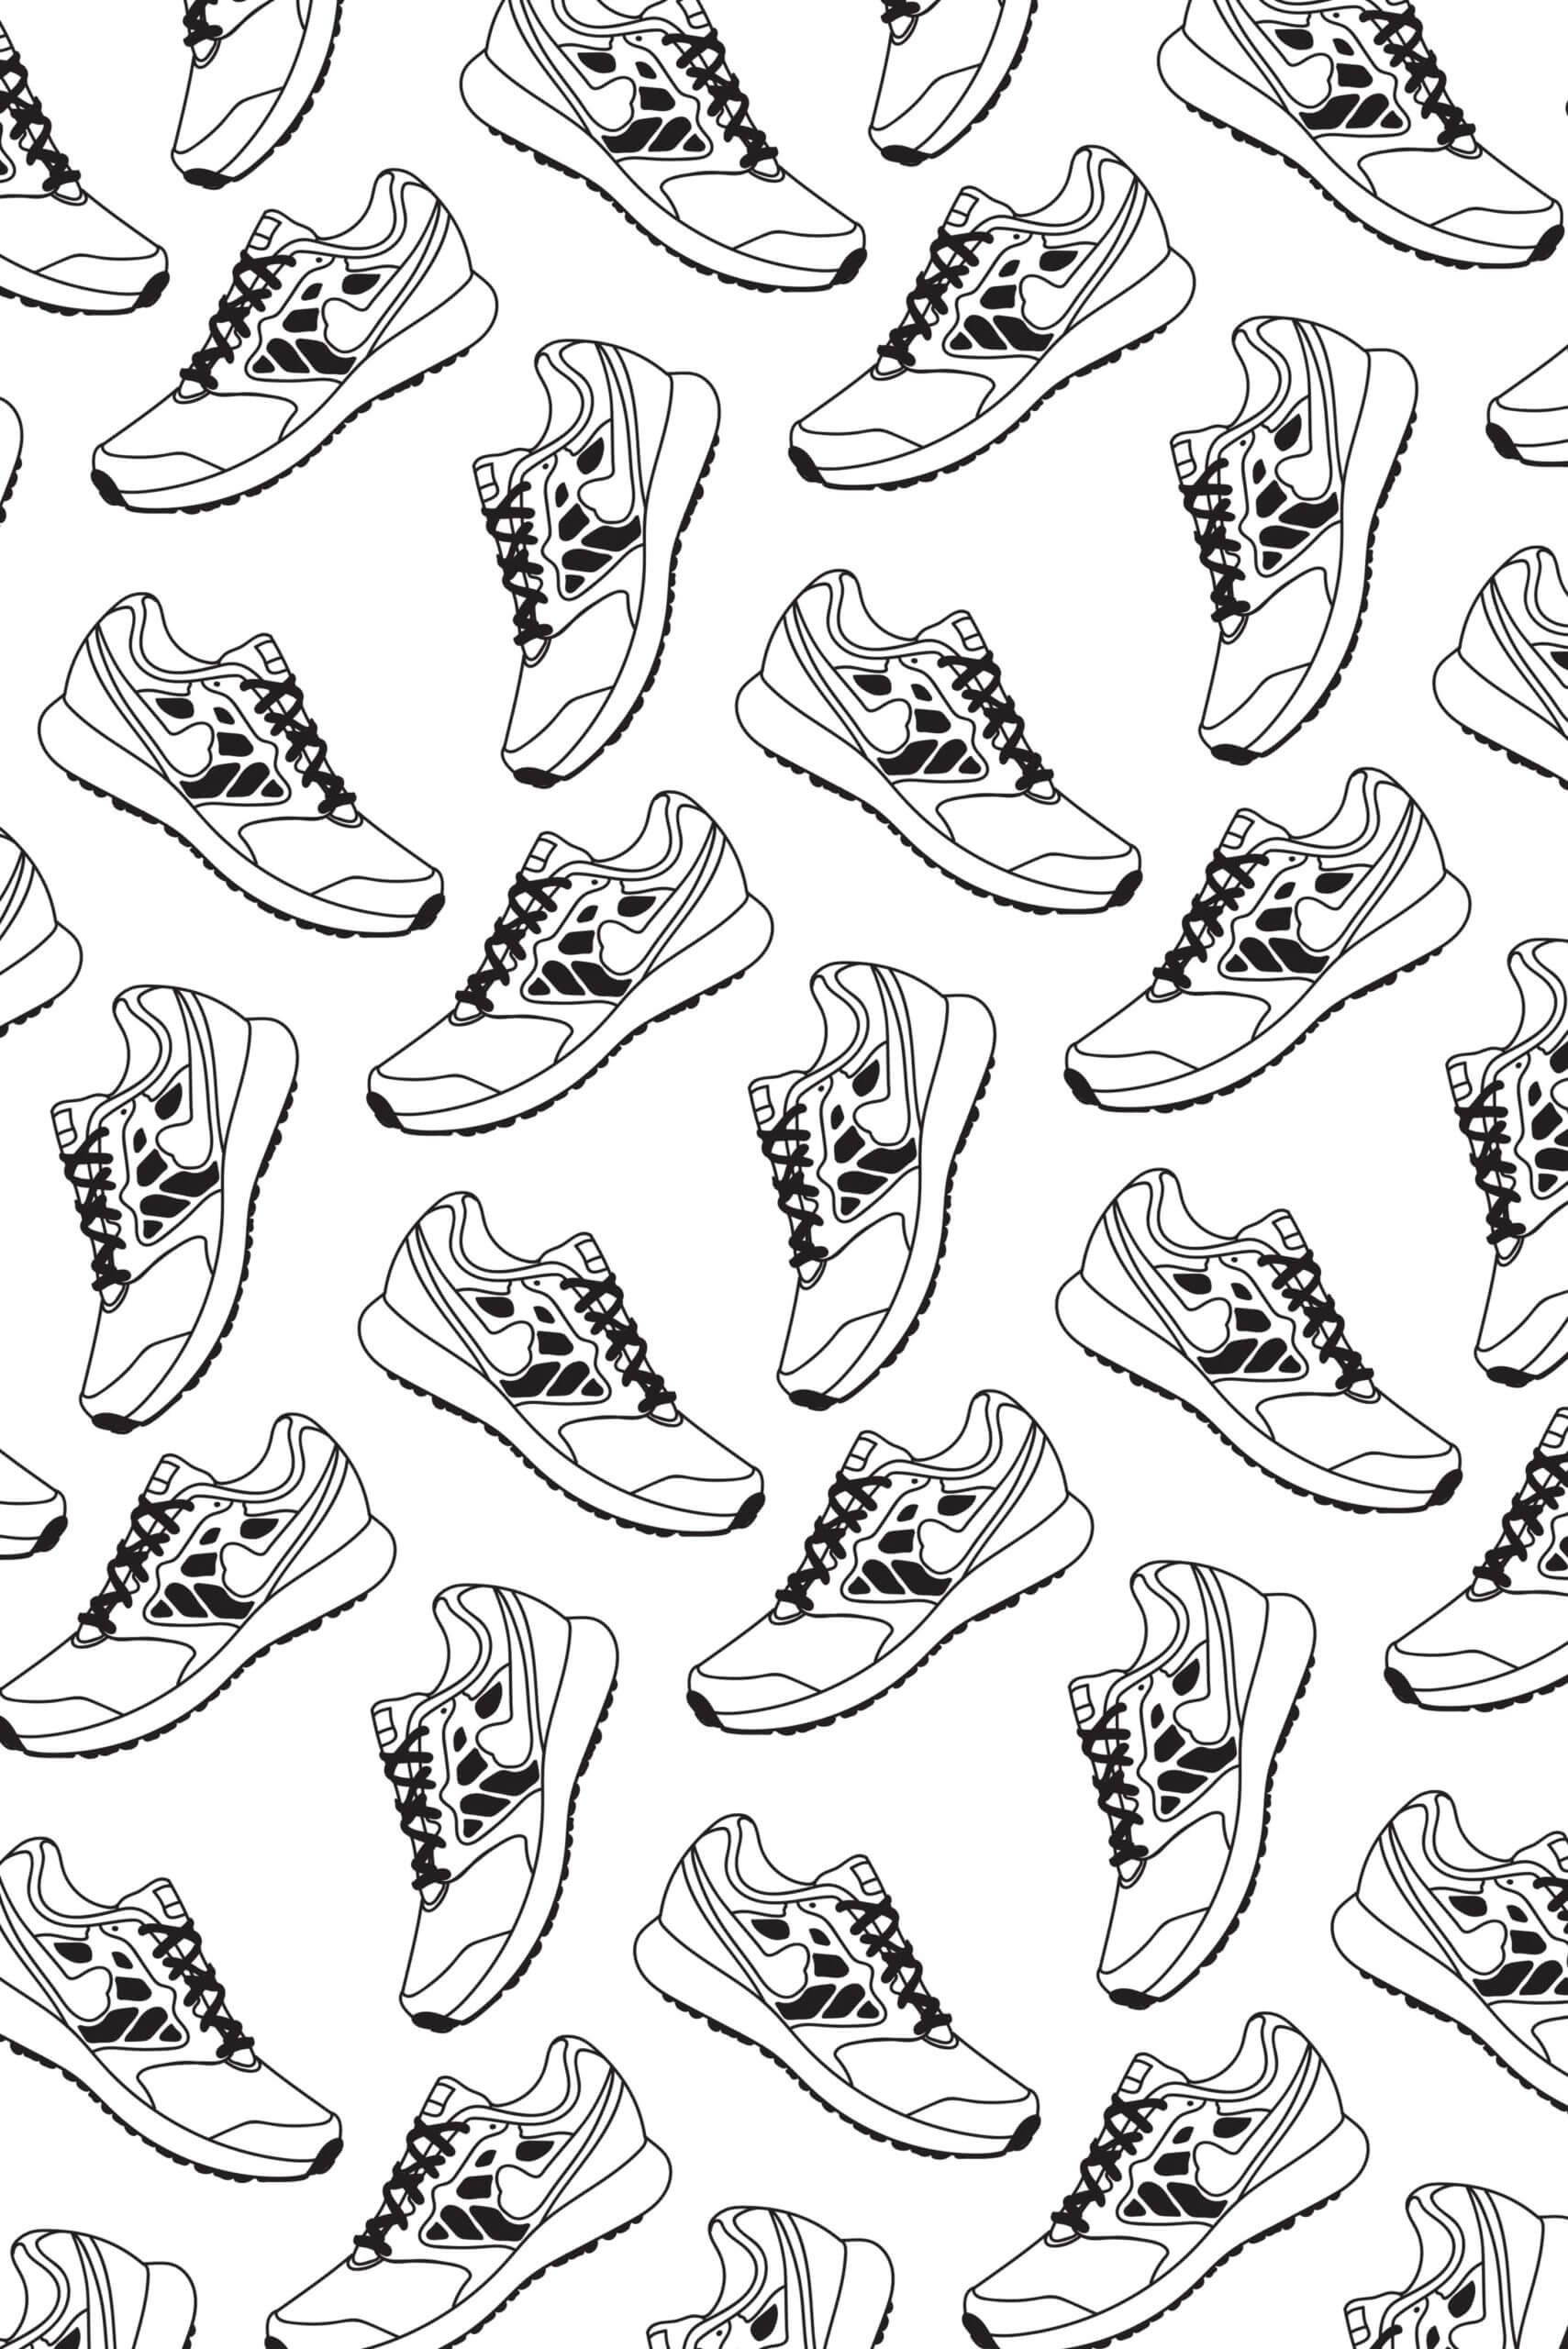 papier peint n31 noir et blanc sport urbain sneakers motif